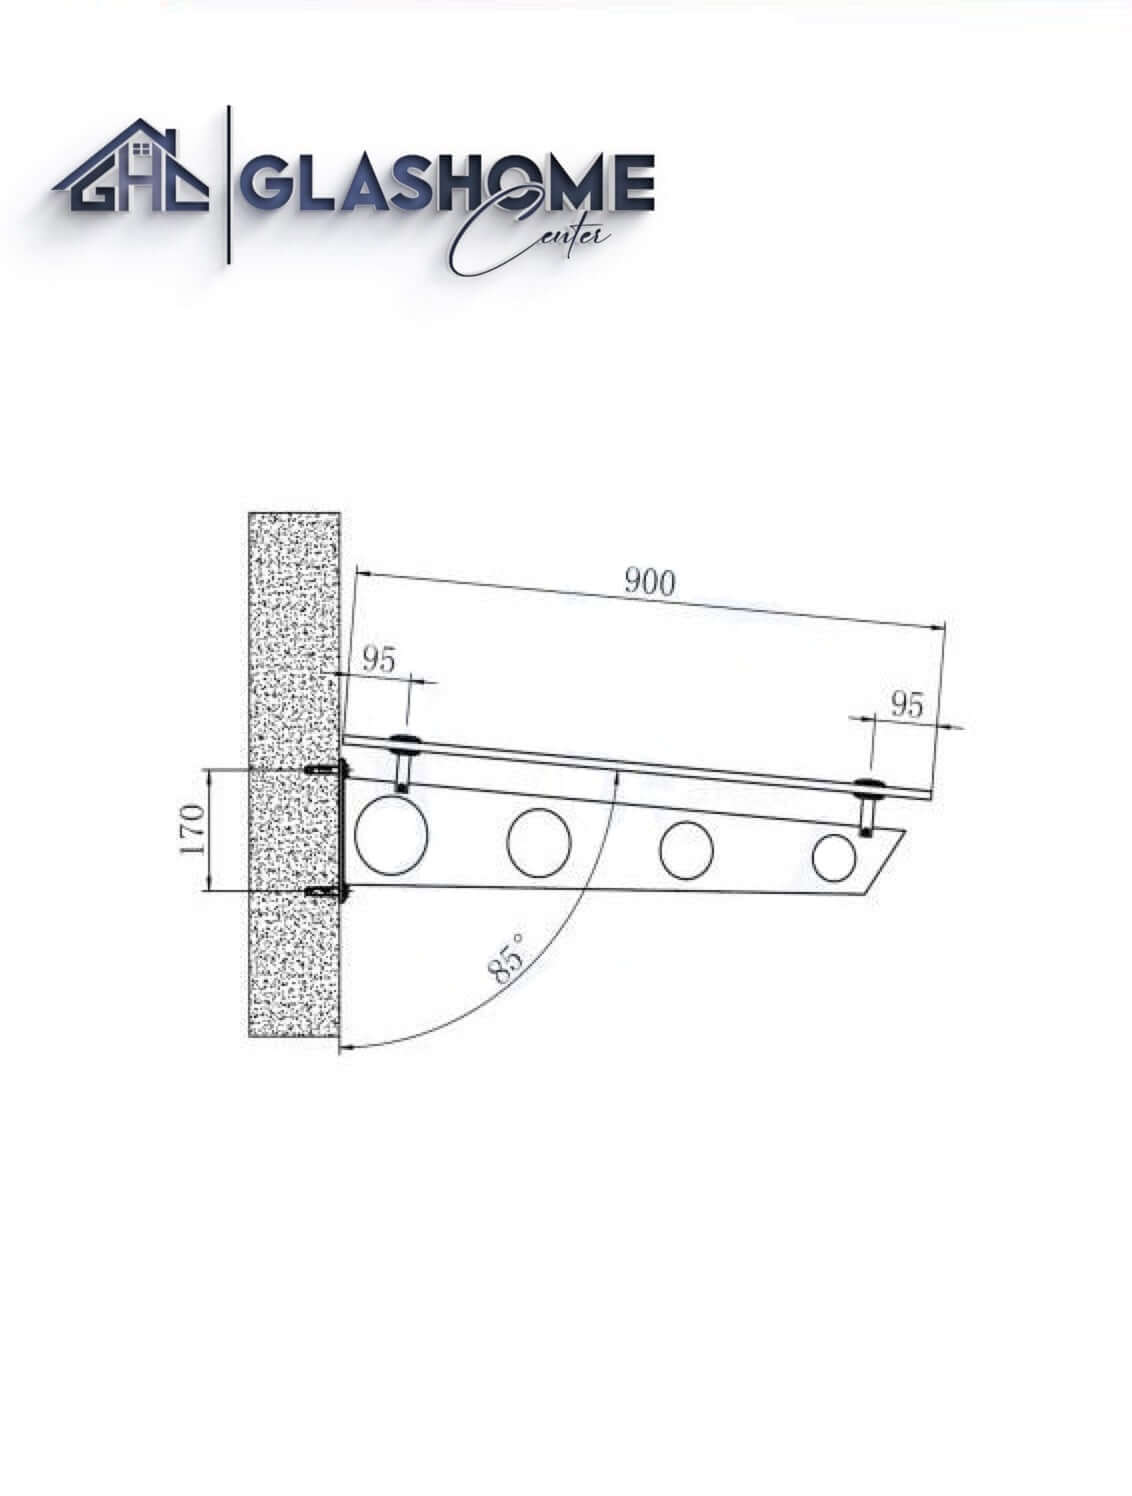 GlasHomeCenter - Glasvordach - Grauglas - 200x90cm - 13,1mm VSG - incl. 3 varianti Edelstahlhalterungen nere "Stoccolma"